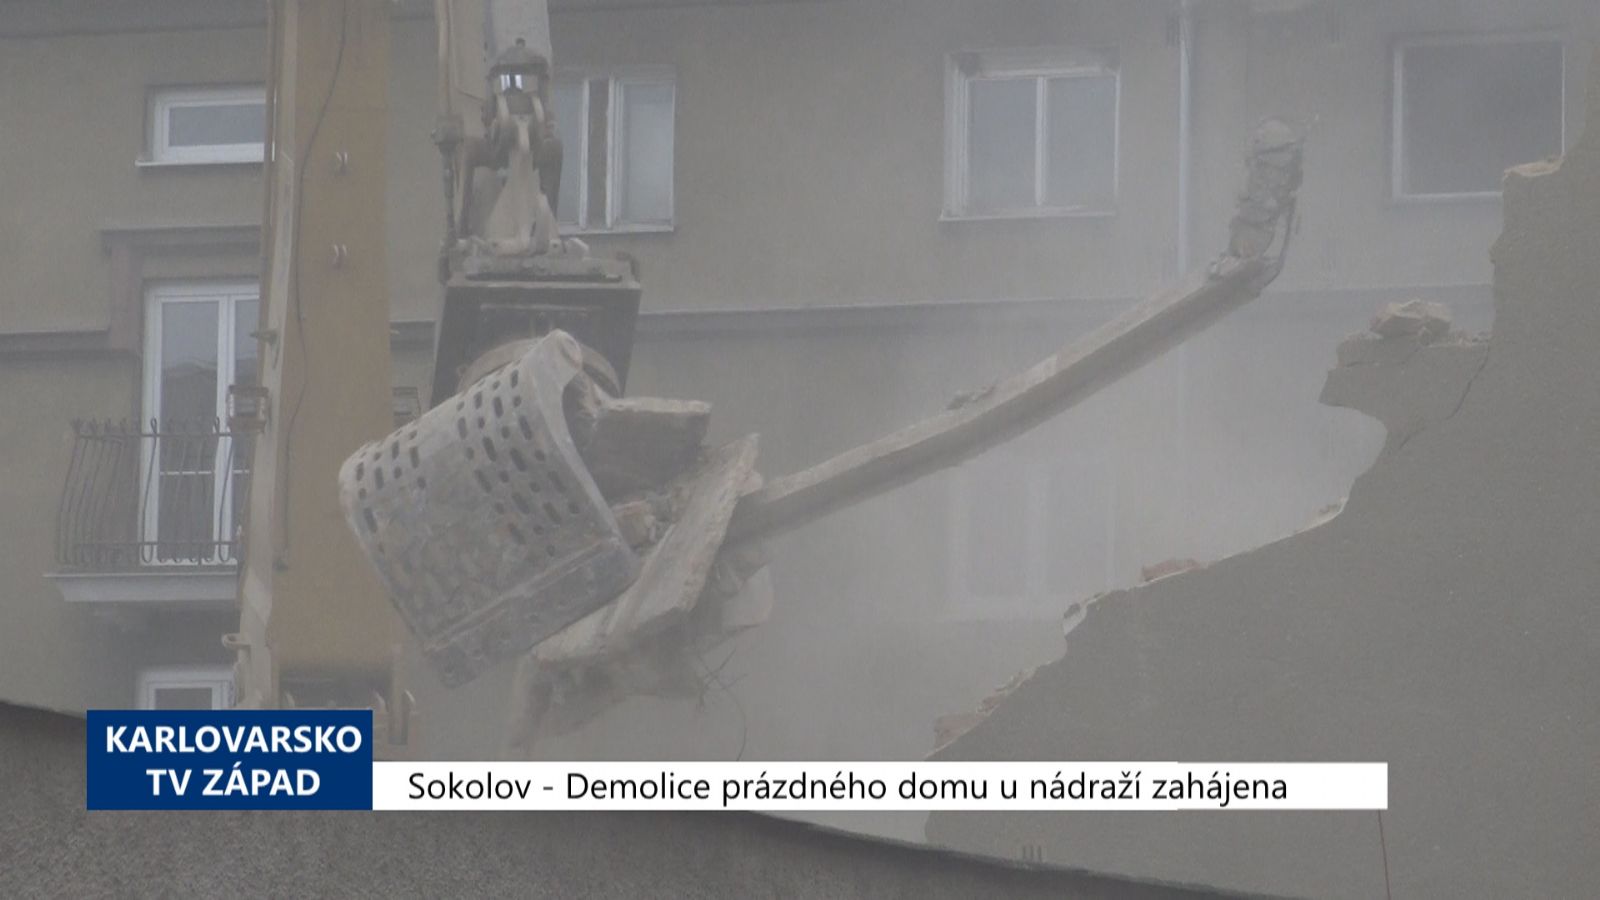 Sokolov: Demolice prázdného domu u nádraží zahájena (TV Západ)